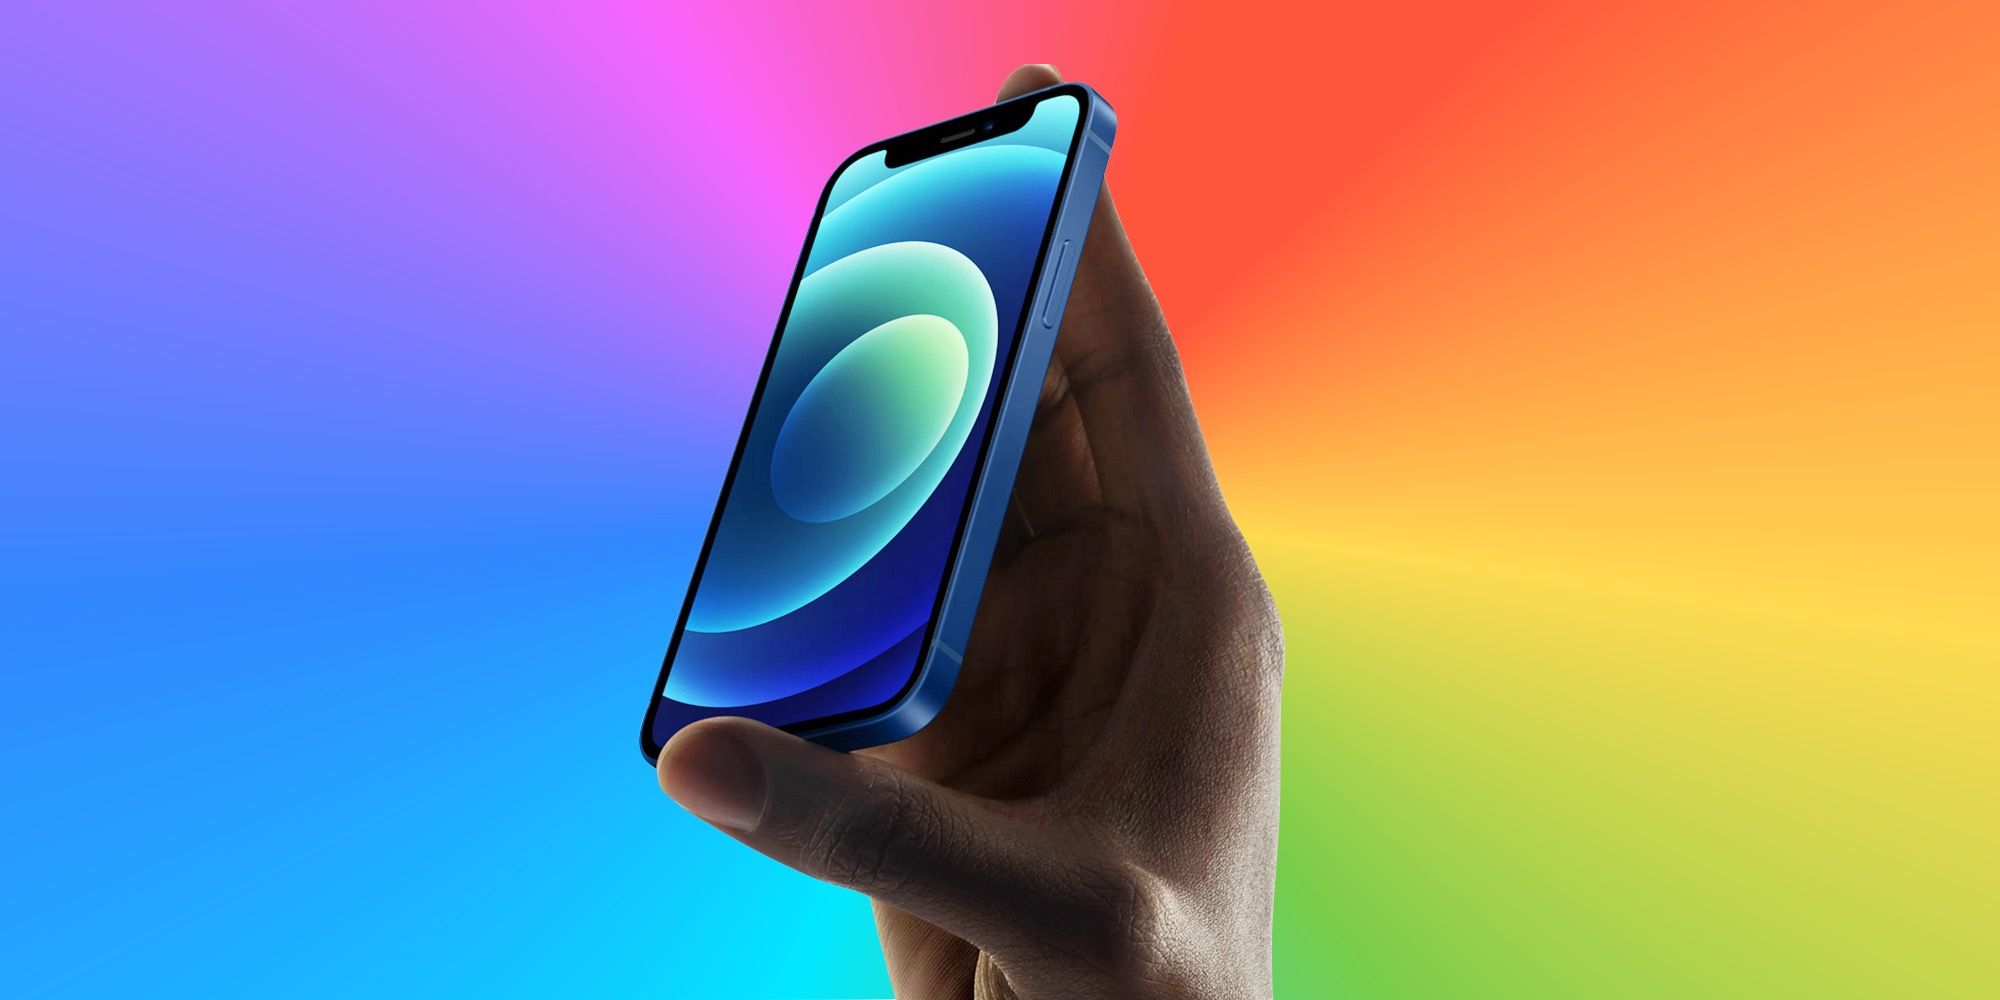 An iPhone 12 mini on a rainbow background